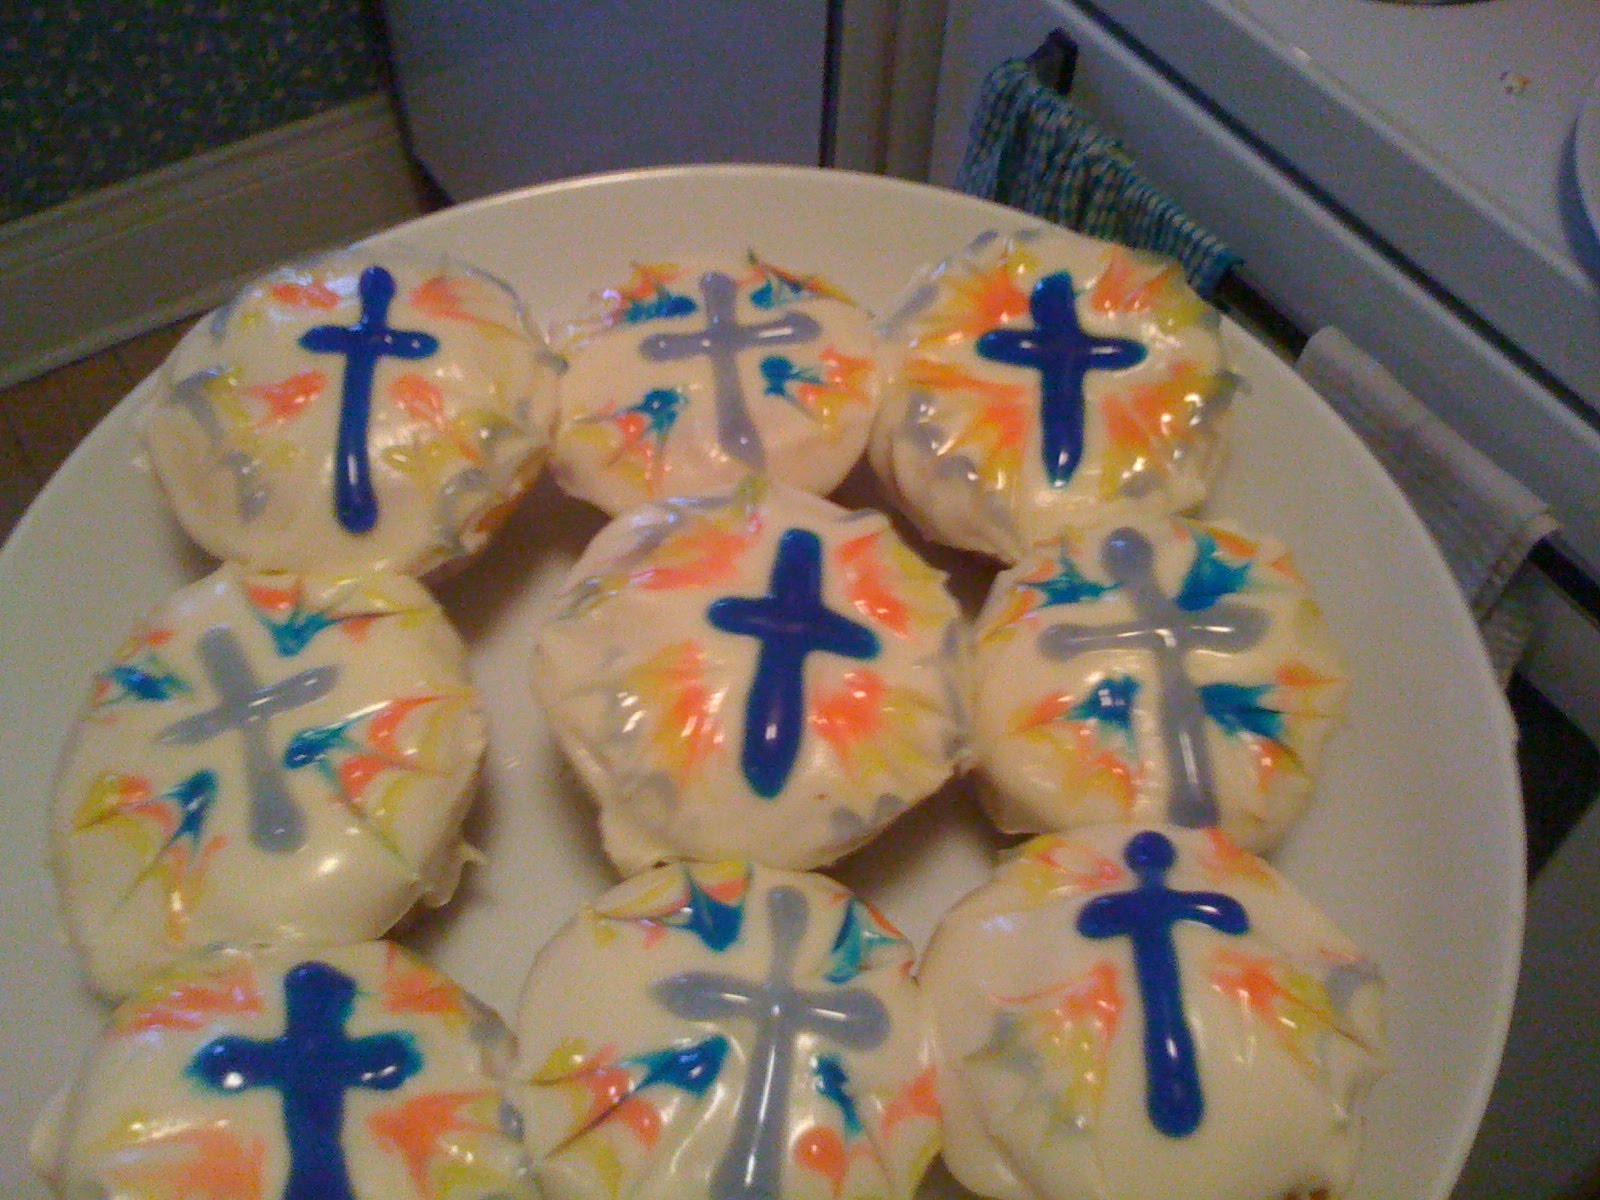 jesus cupcakes